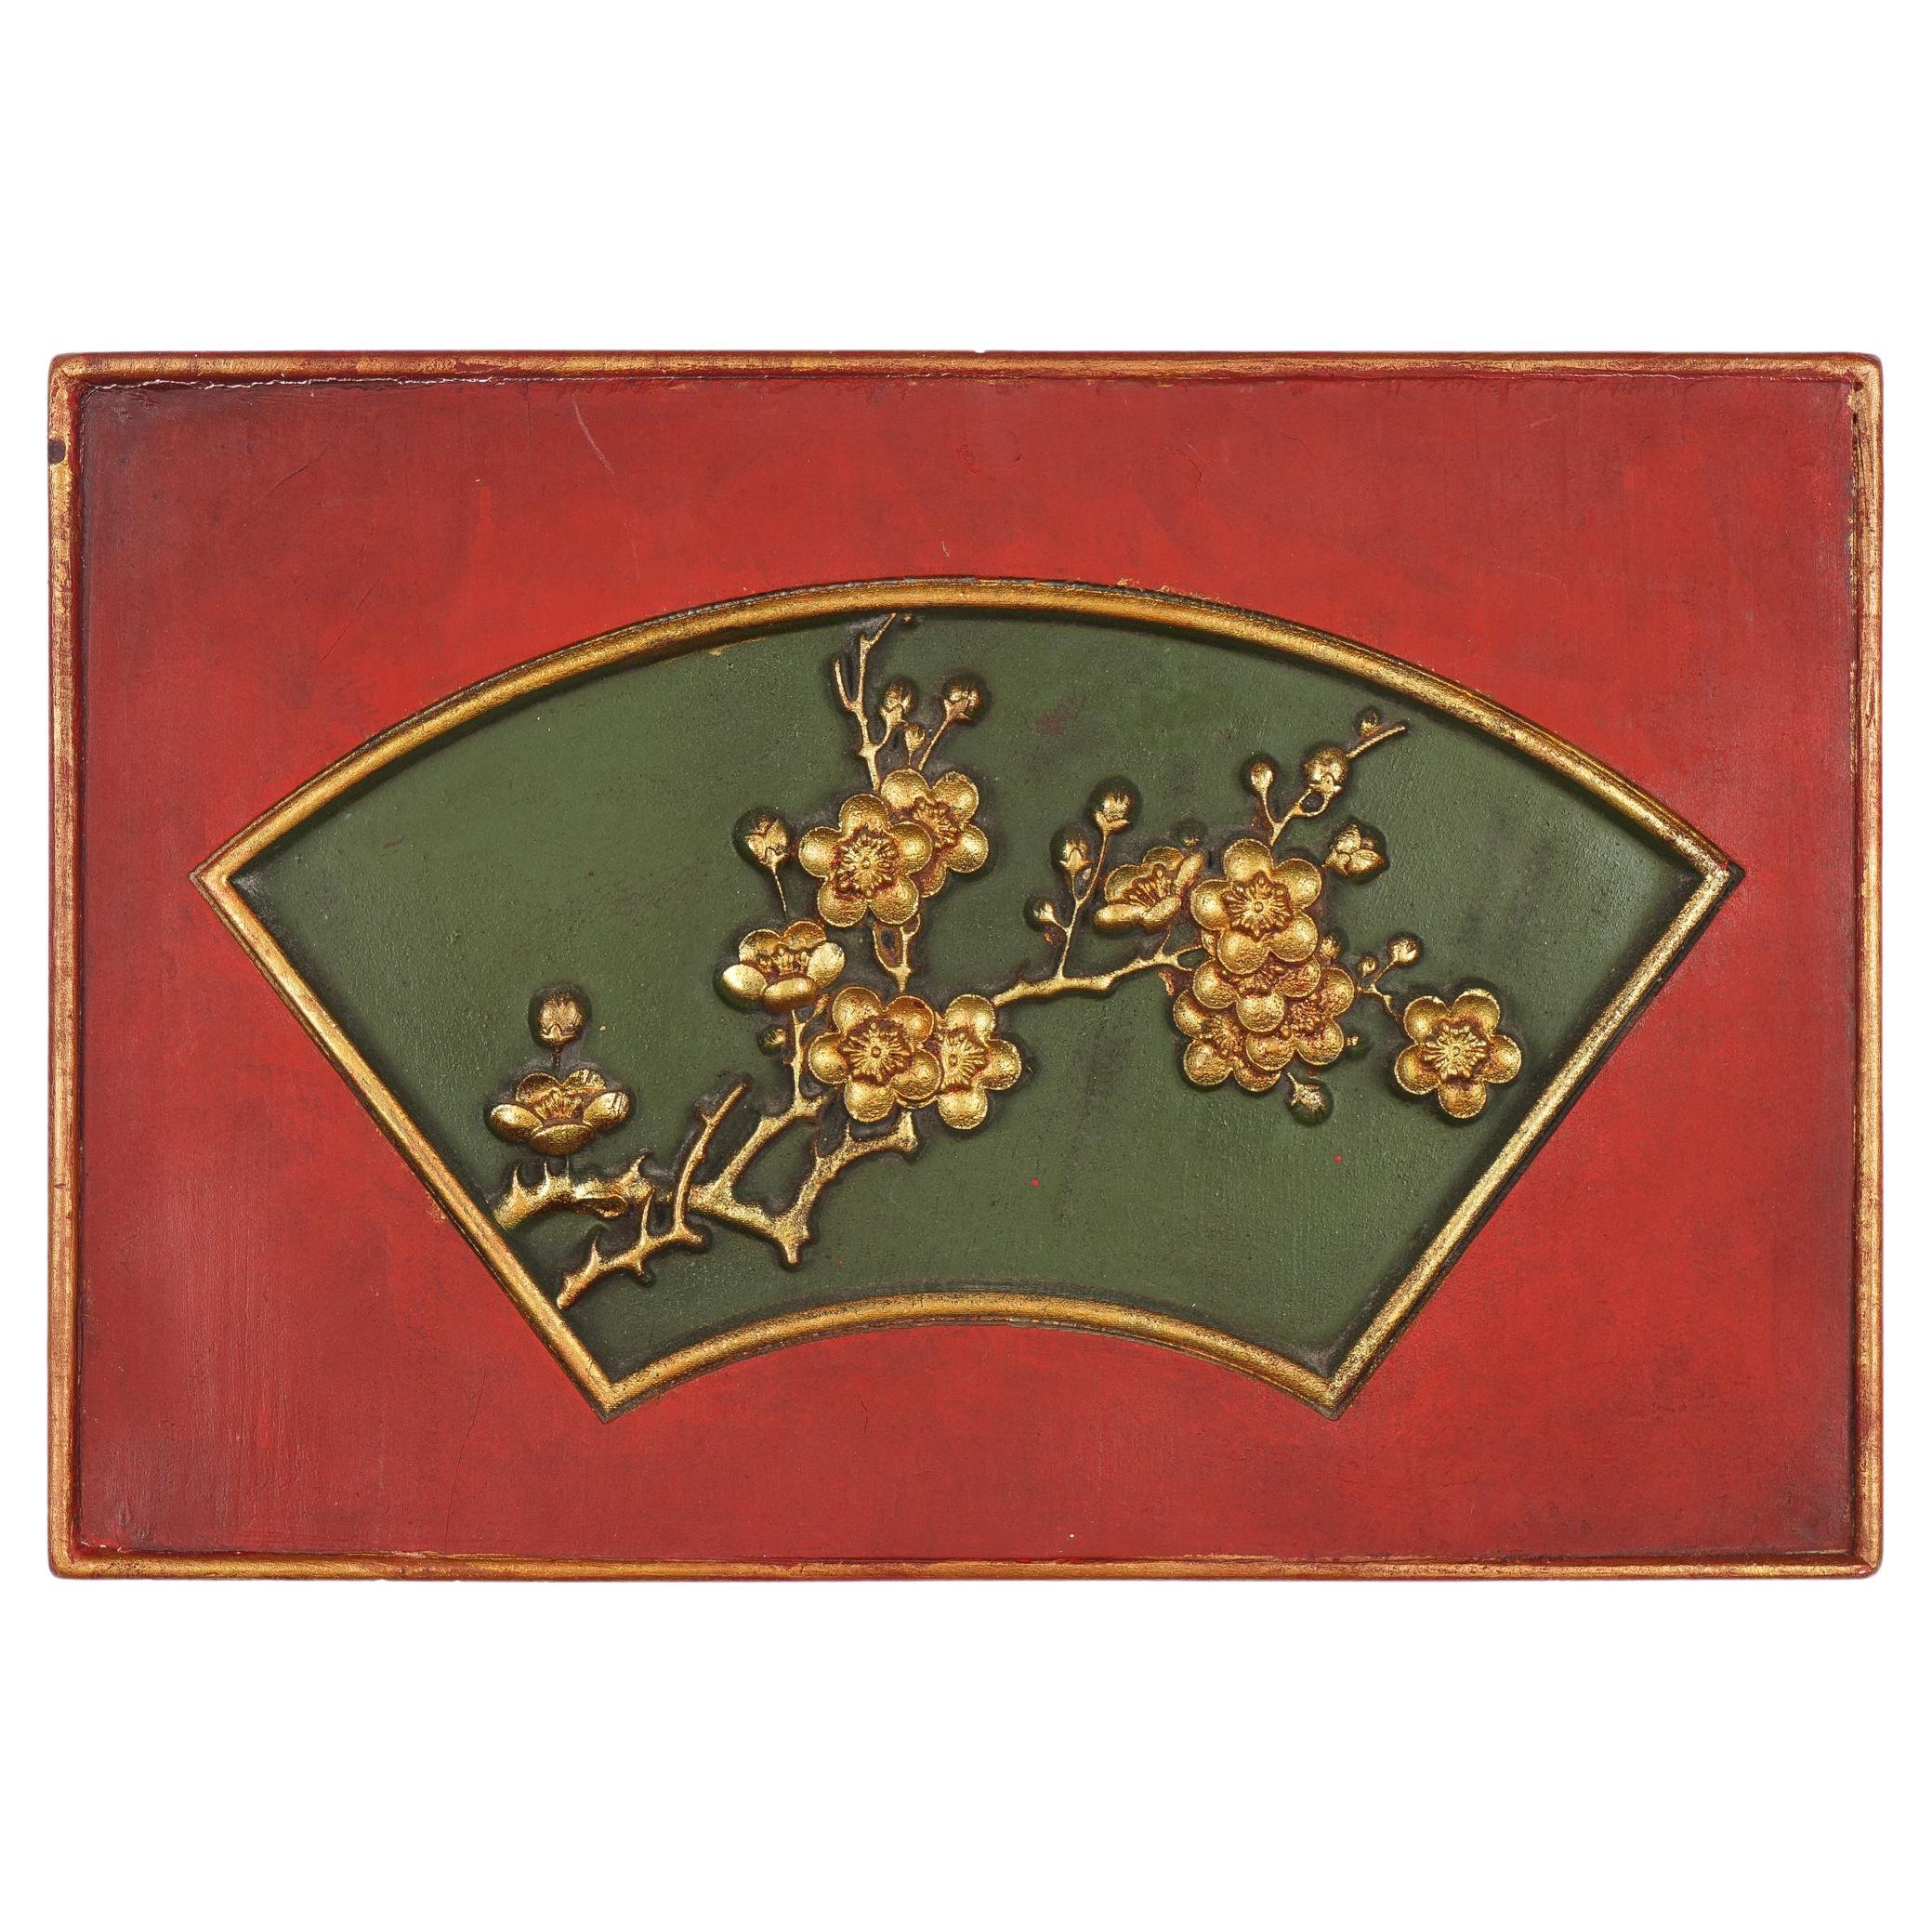 Panneau rectangulaire chinois avec cartouche doré sculpté, années 1800